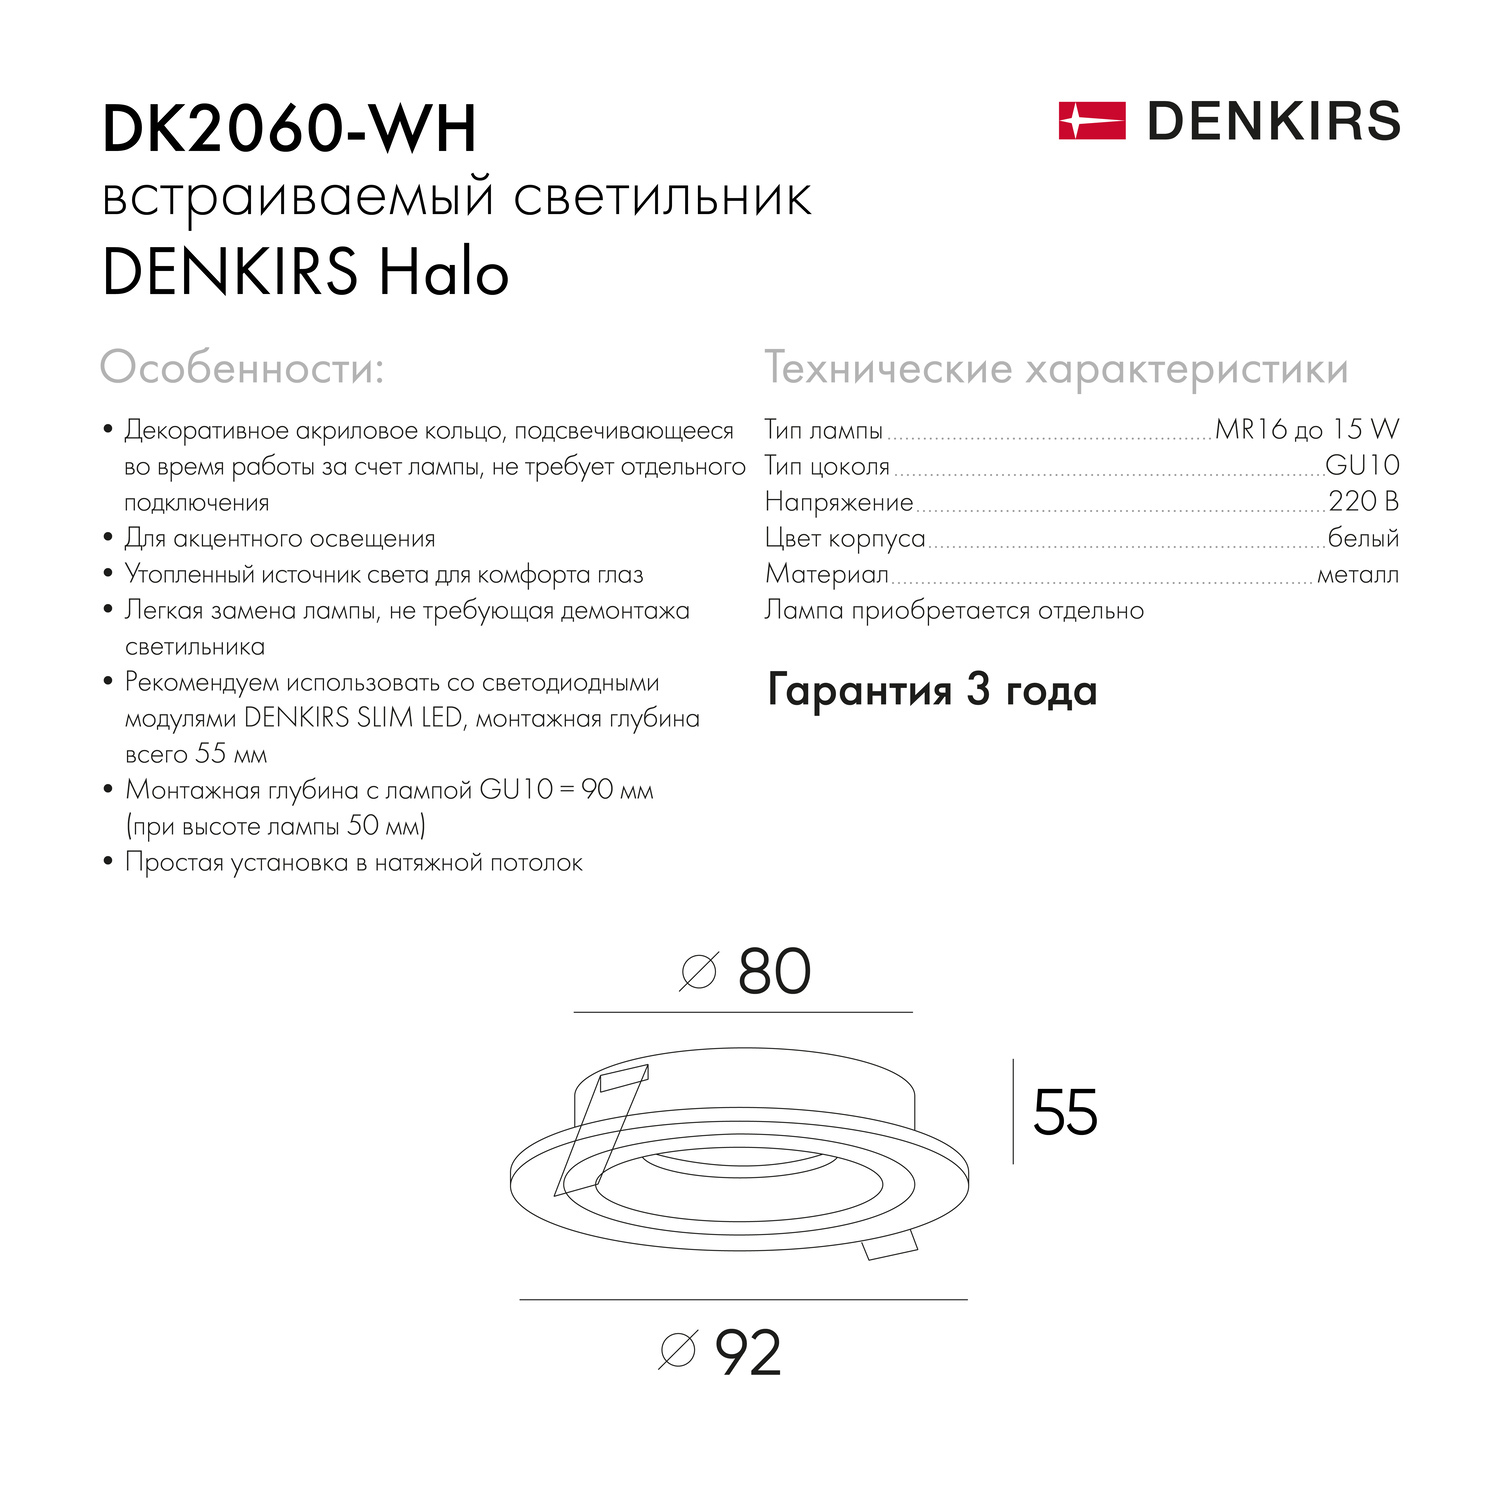 DK2060-WH